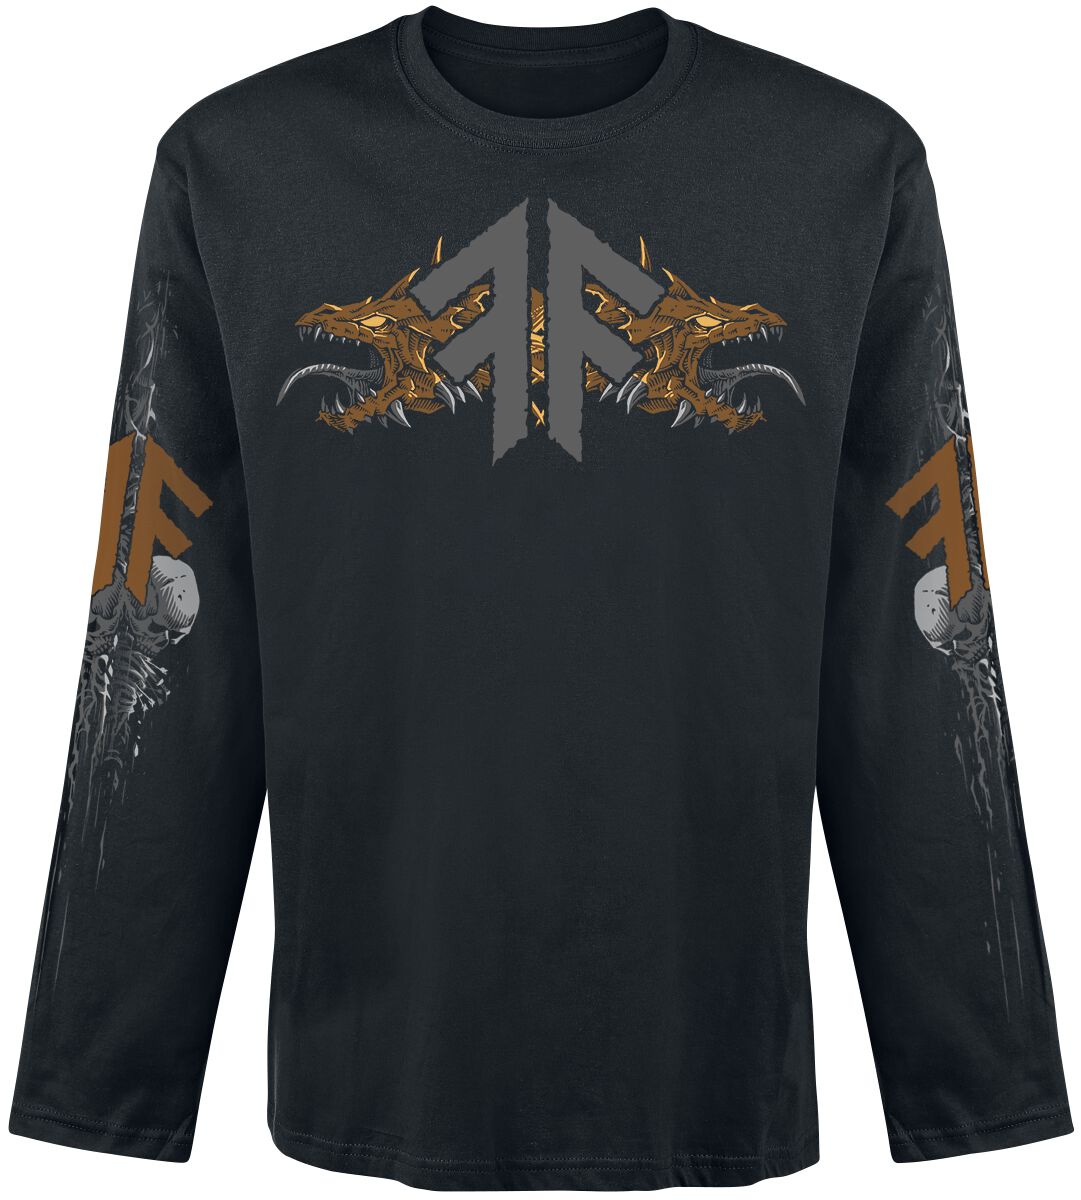 Amon Amarth Langarmshirt - Fafner's Gold - S - für Männer - Größe S - schwarz  - Lizenziertes Merchandise! von Amon Amarth